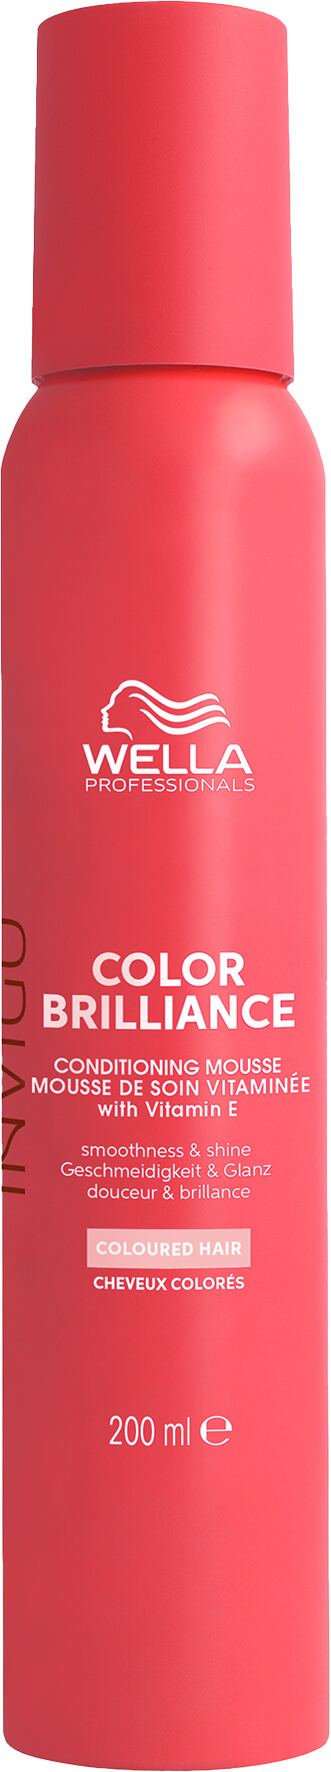 Wella Invigo Color Brilliance Leave-in Pflegemousse 200ml